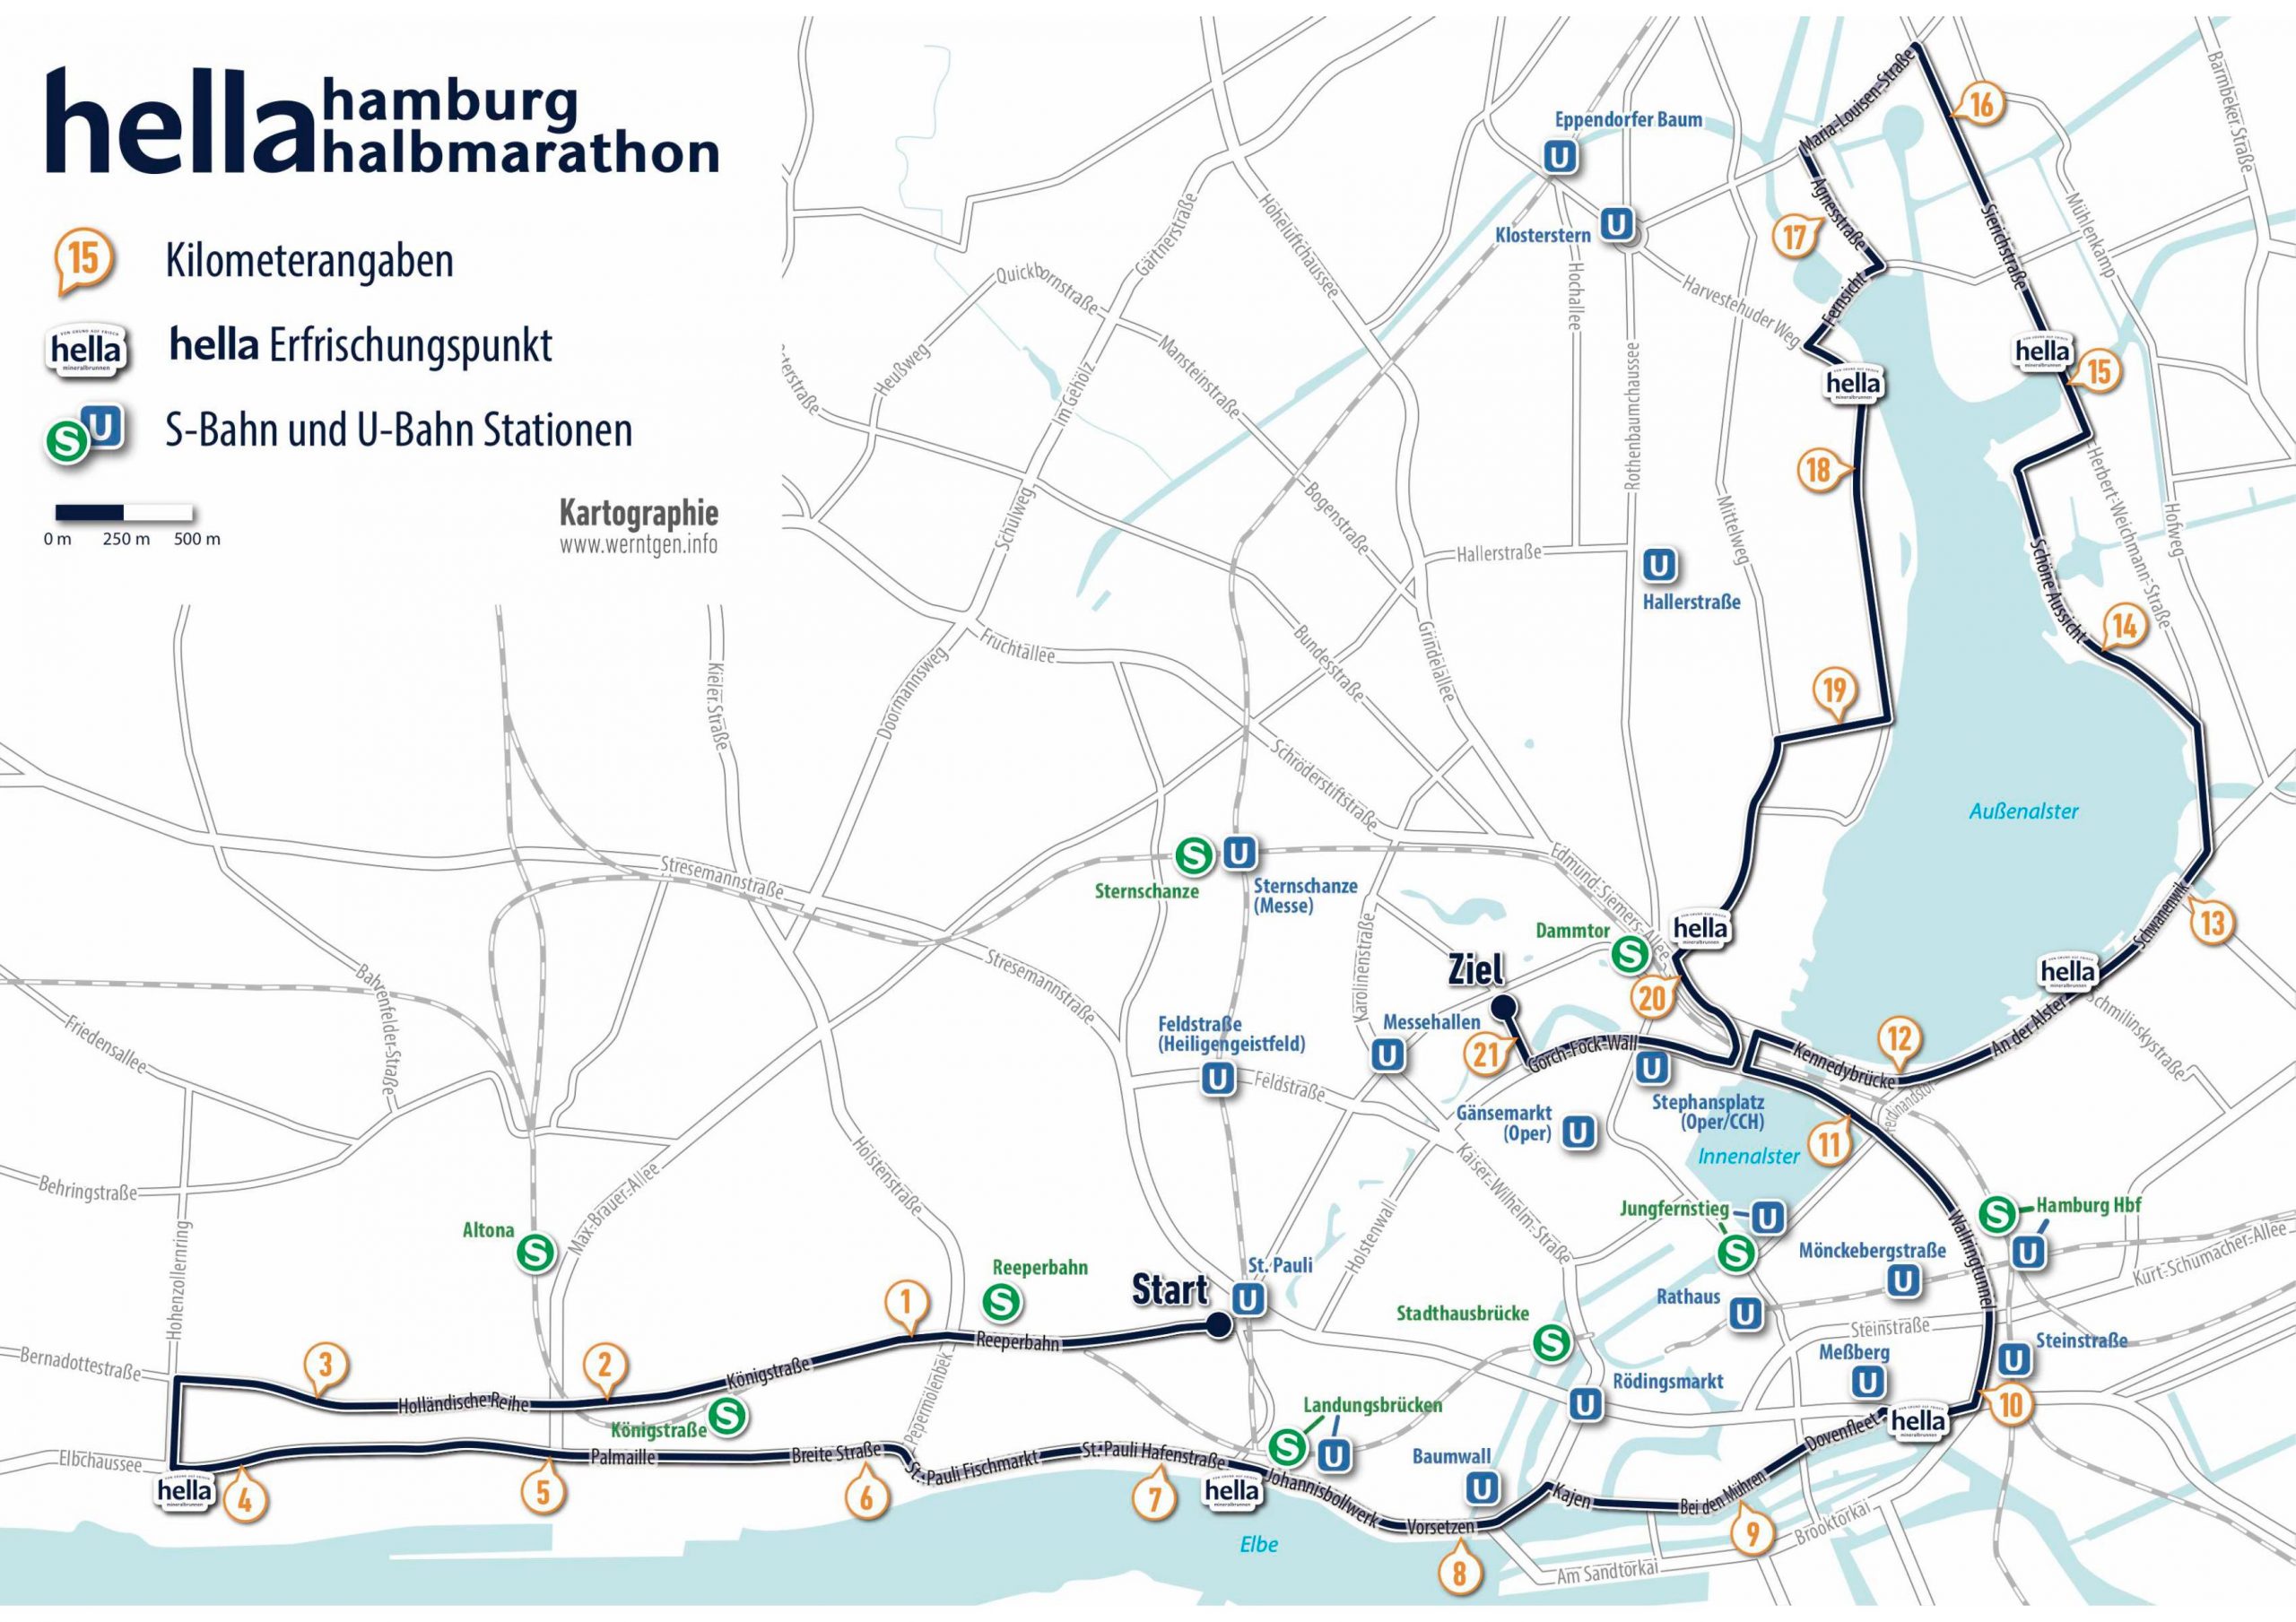 Karte der Hamburger Innenstadt, auf der die Laufstrecke des Marathons eingezeichnet ist